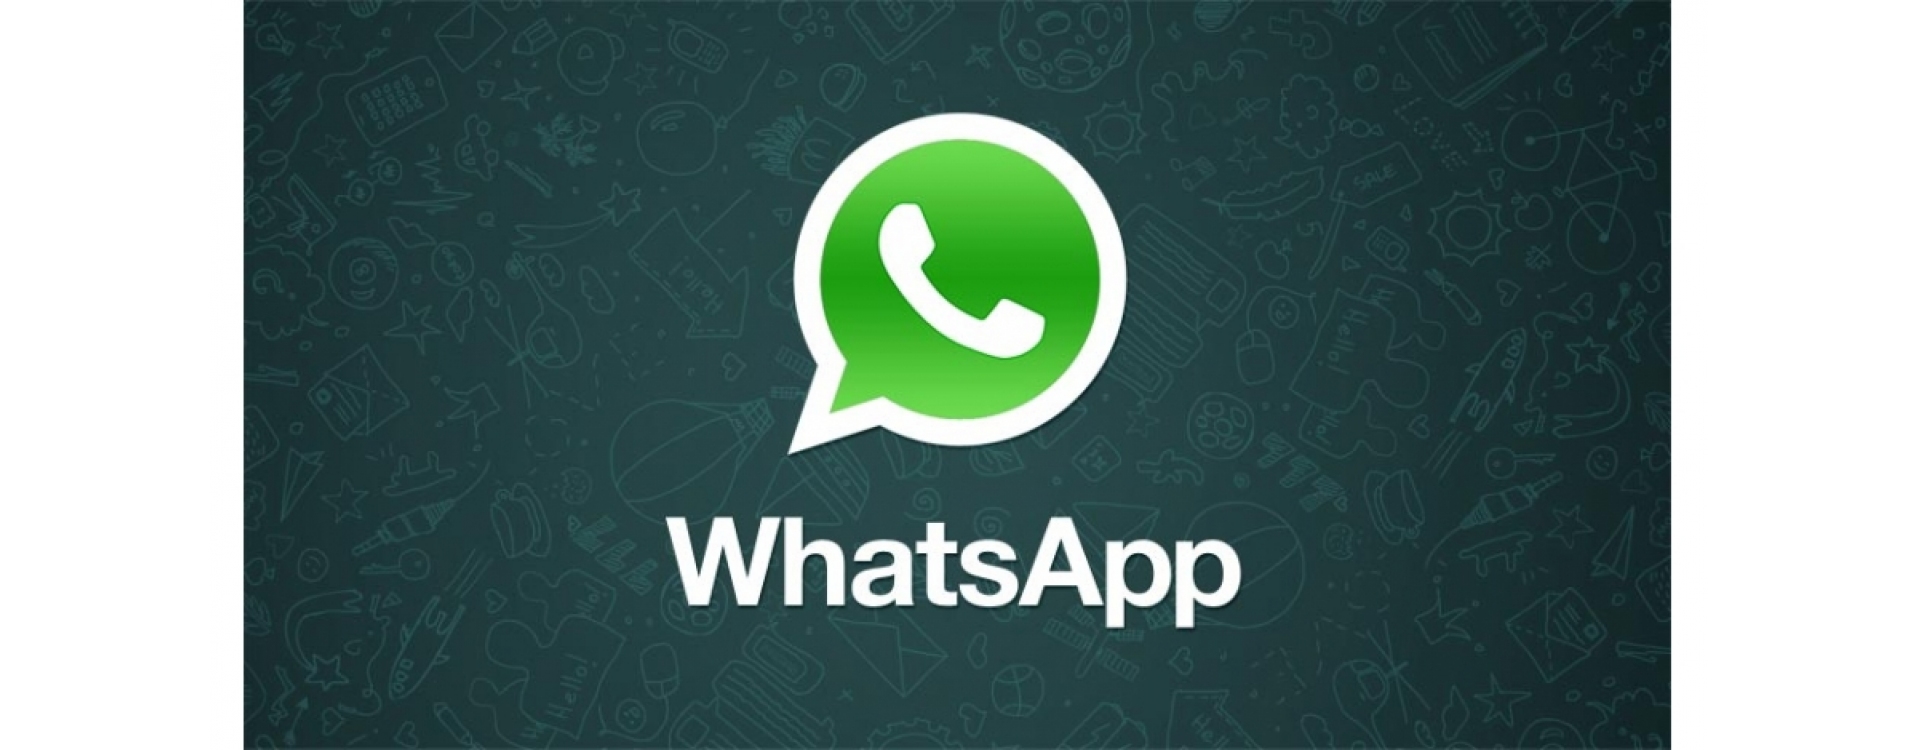 WhatsApp explica por que não entrega os dados que a polícia brasileira pede 